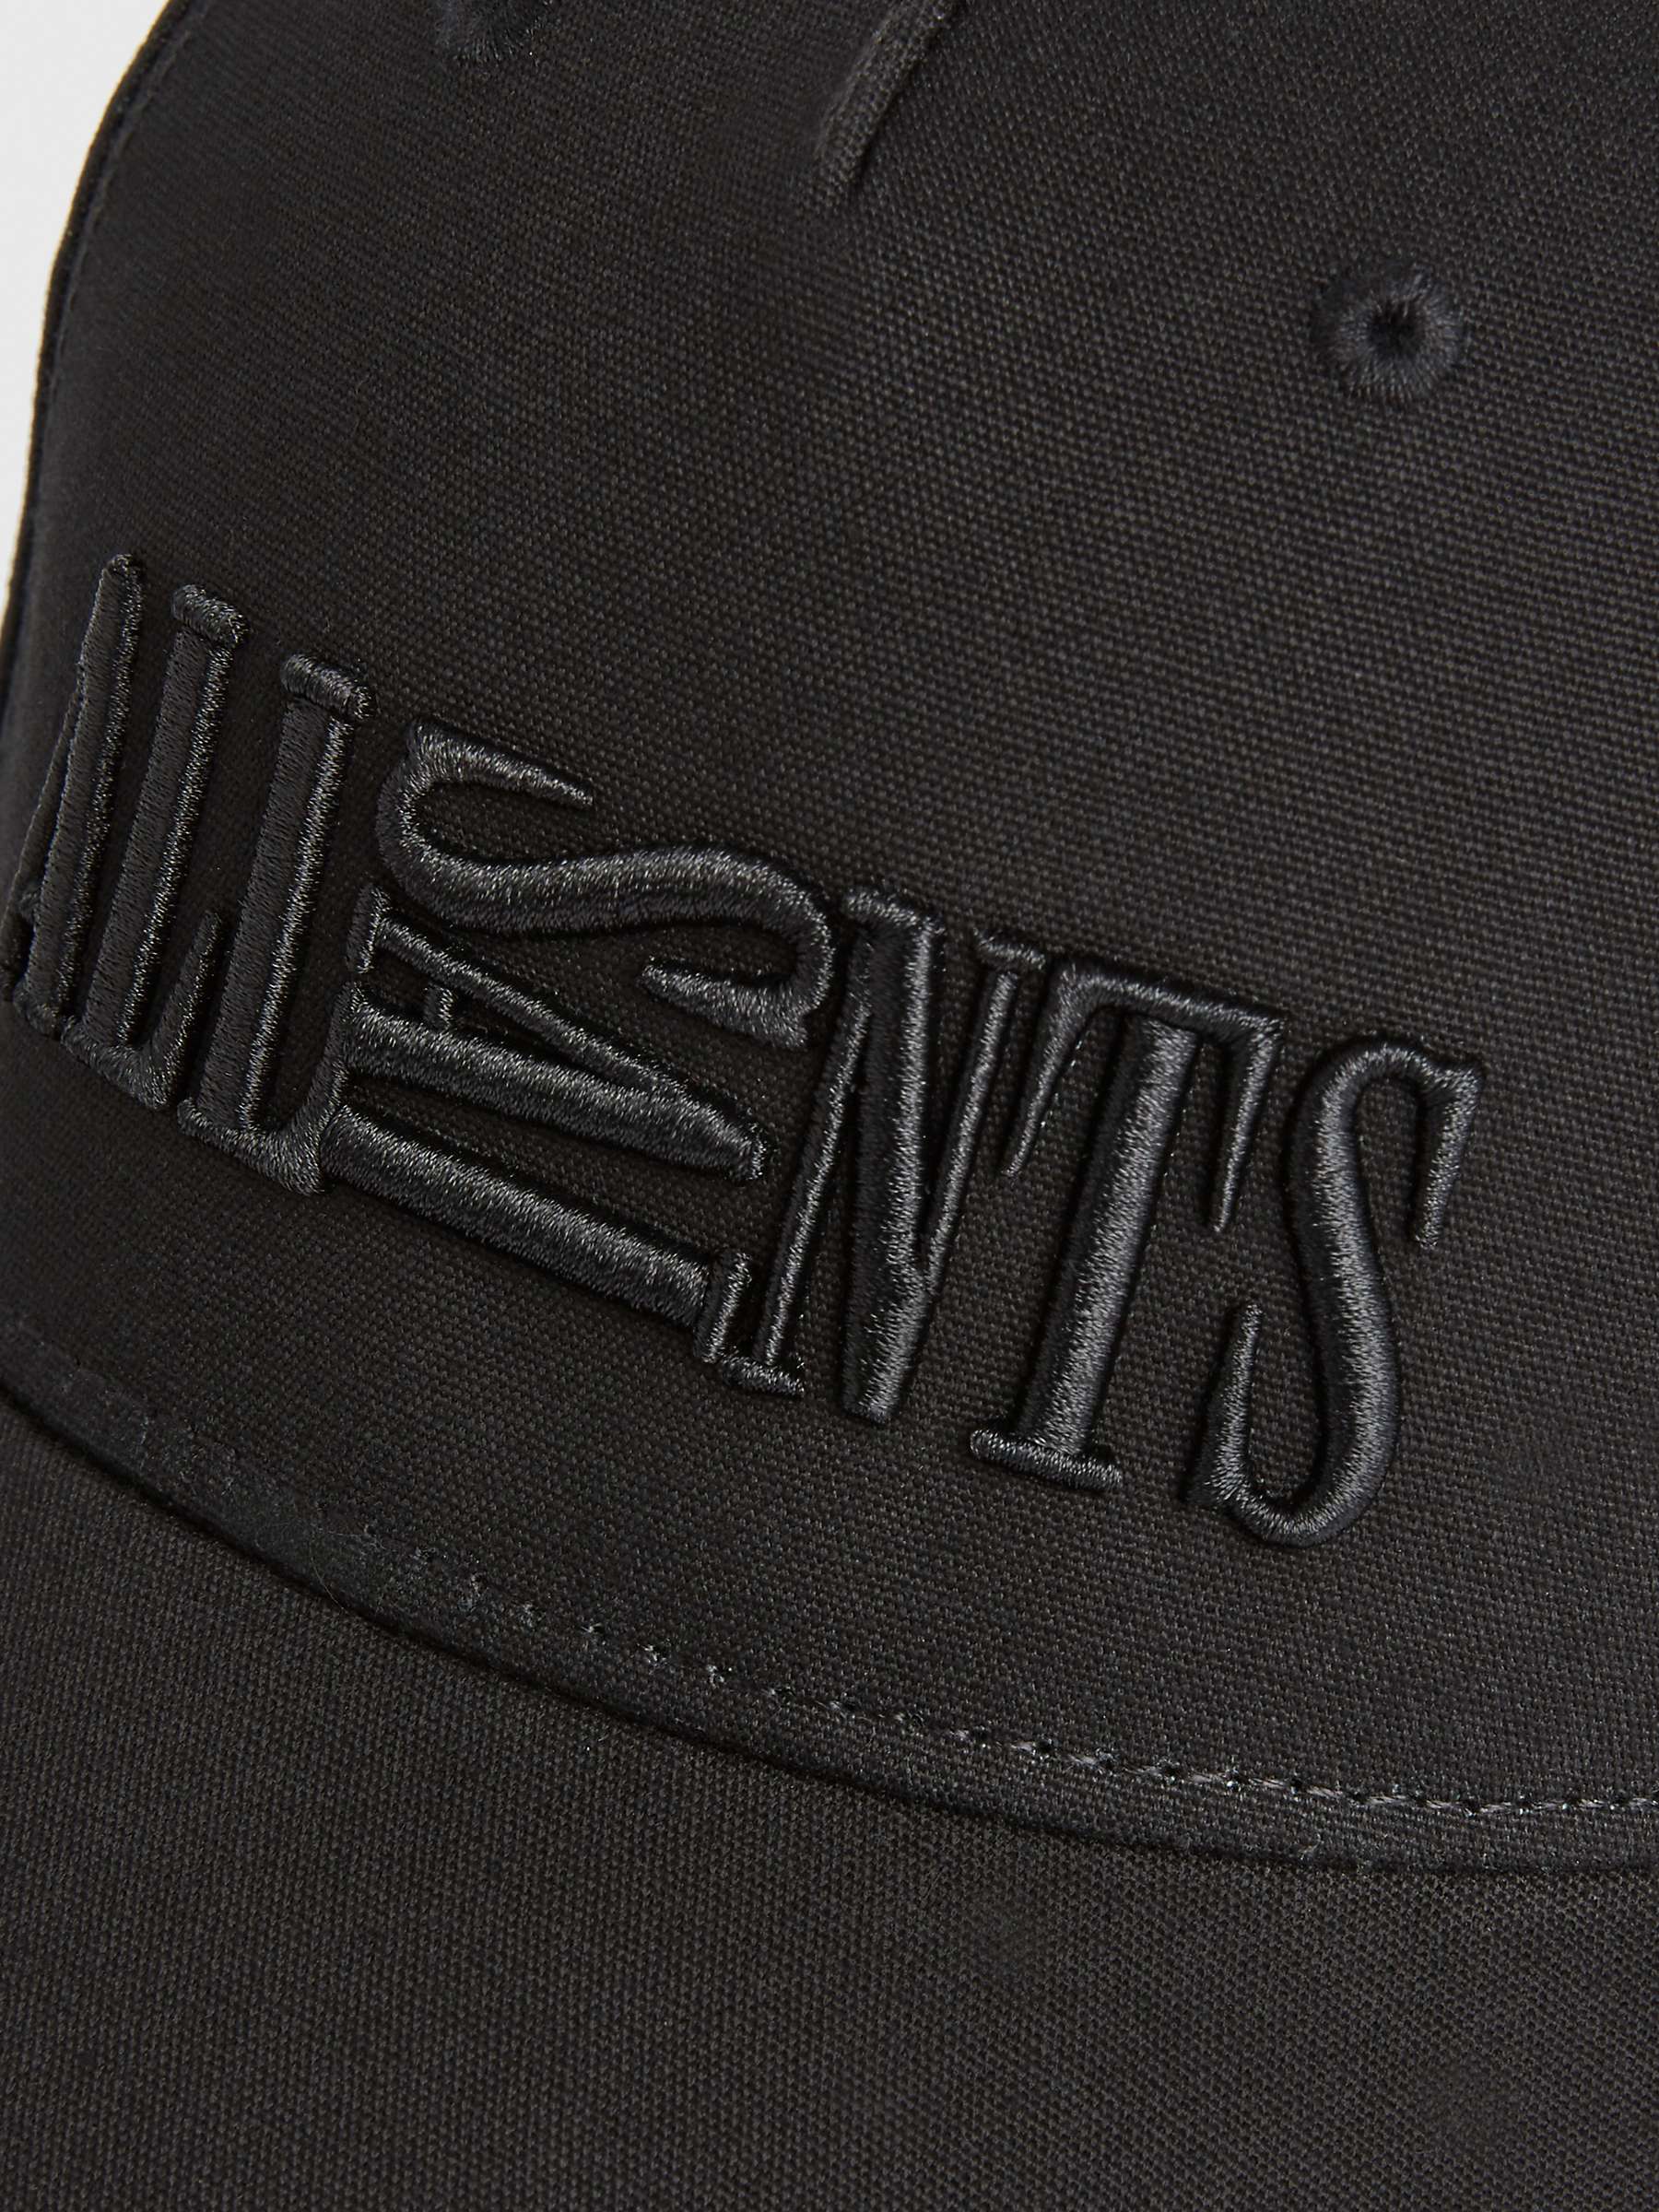 Buy AllSaints Oppose Embroidered Logo Baseball Cap, Black/White Online at johnlewis.com